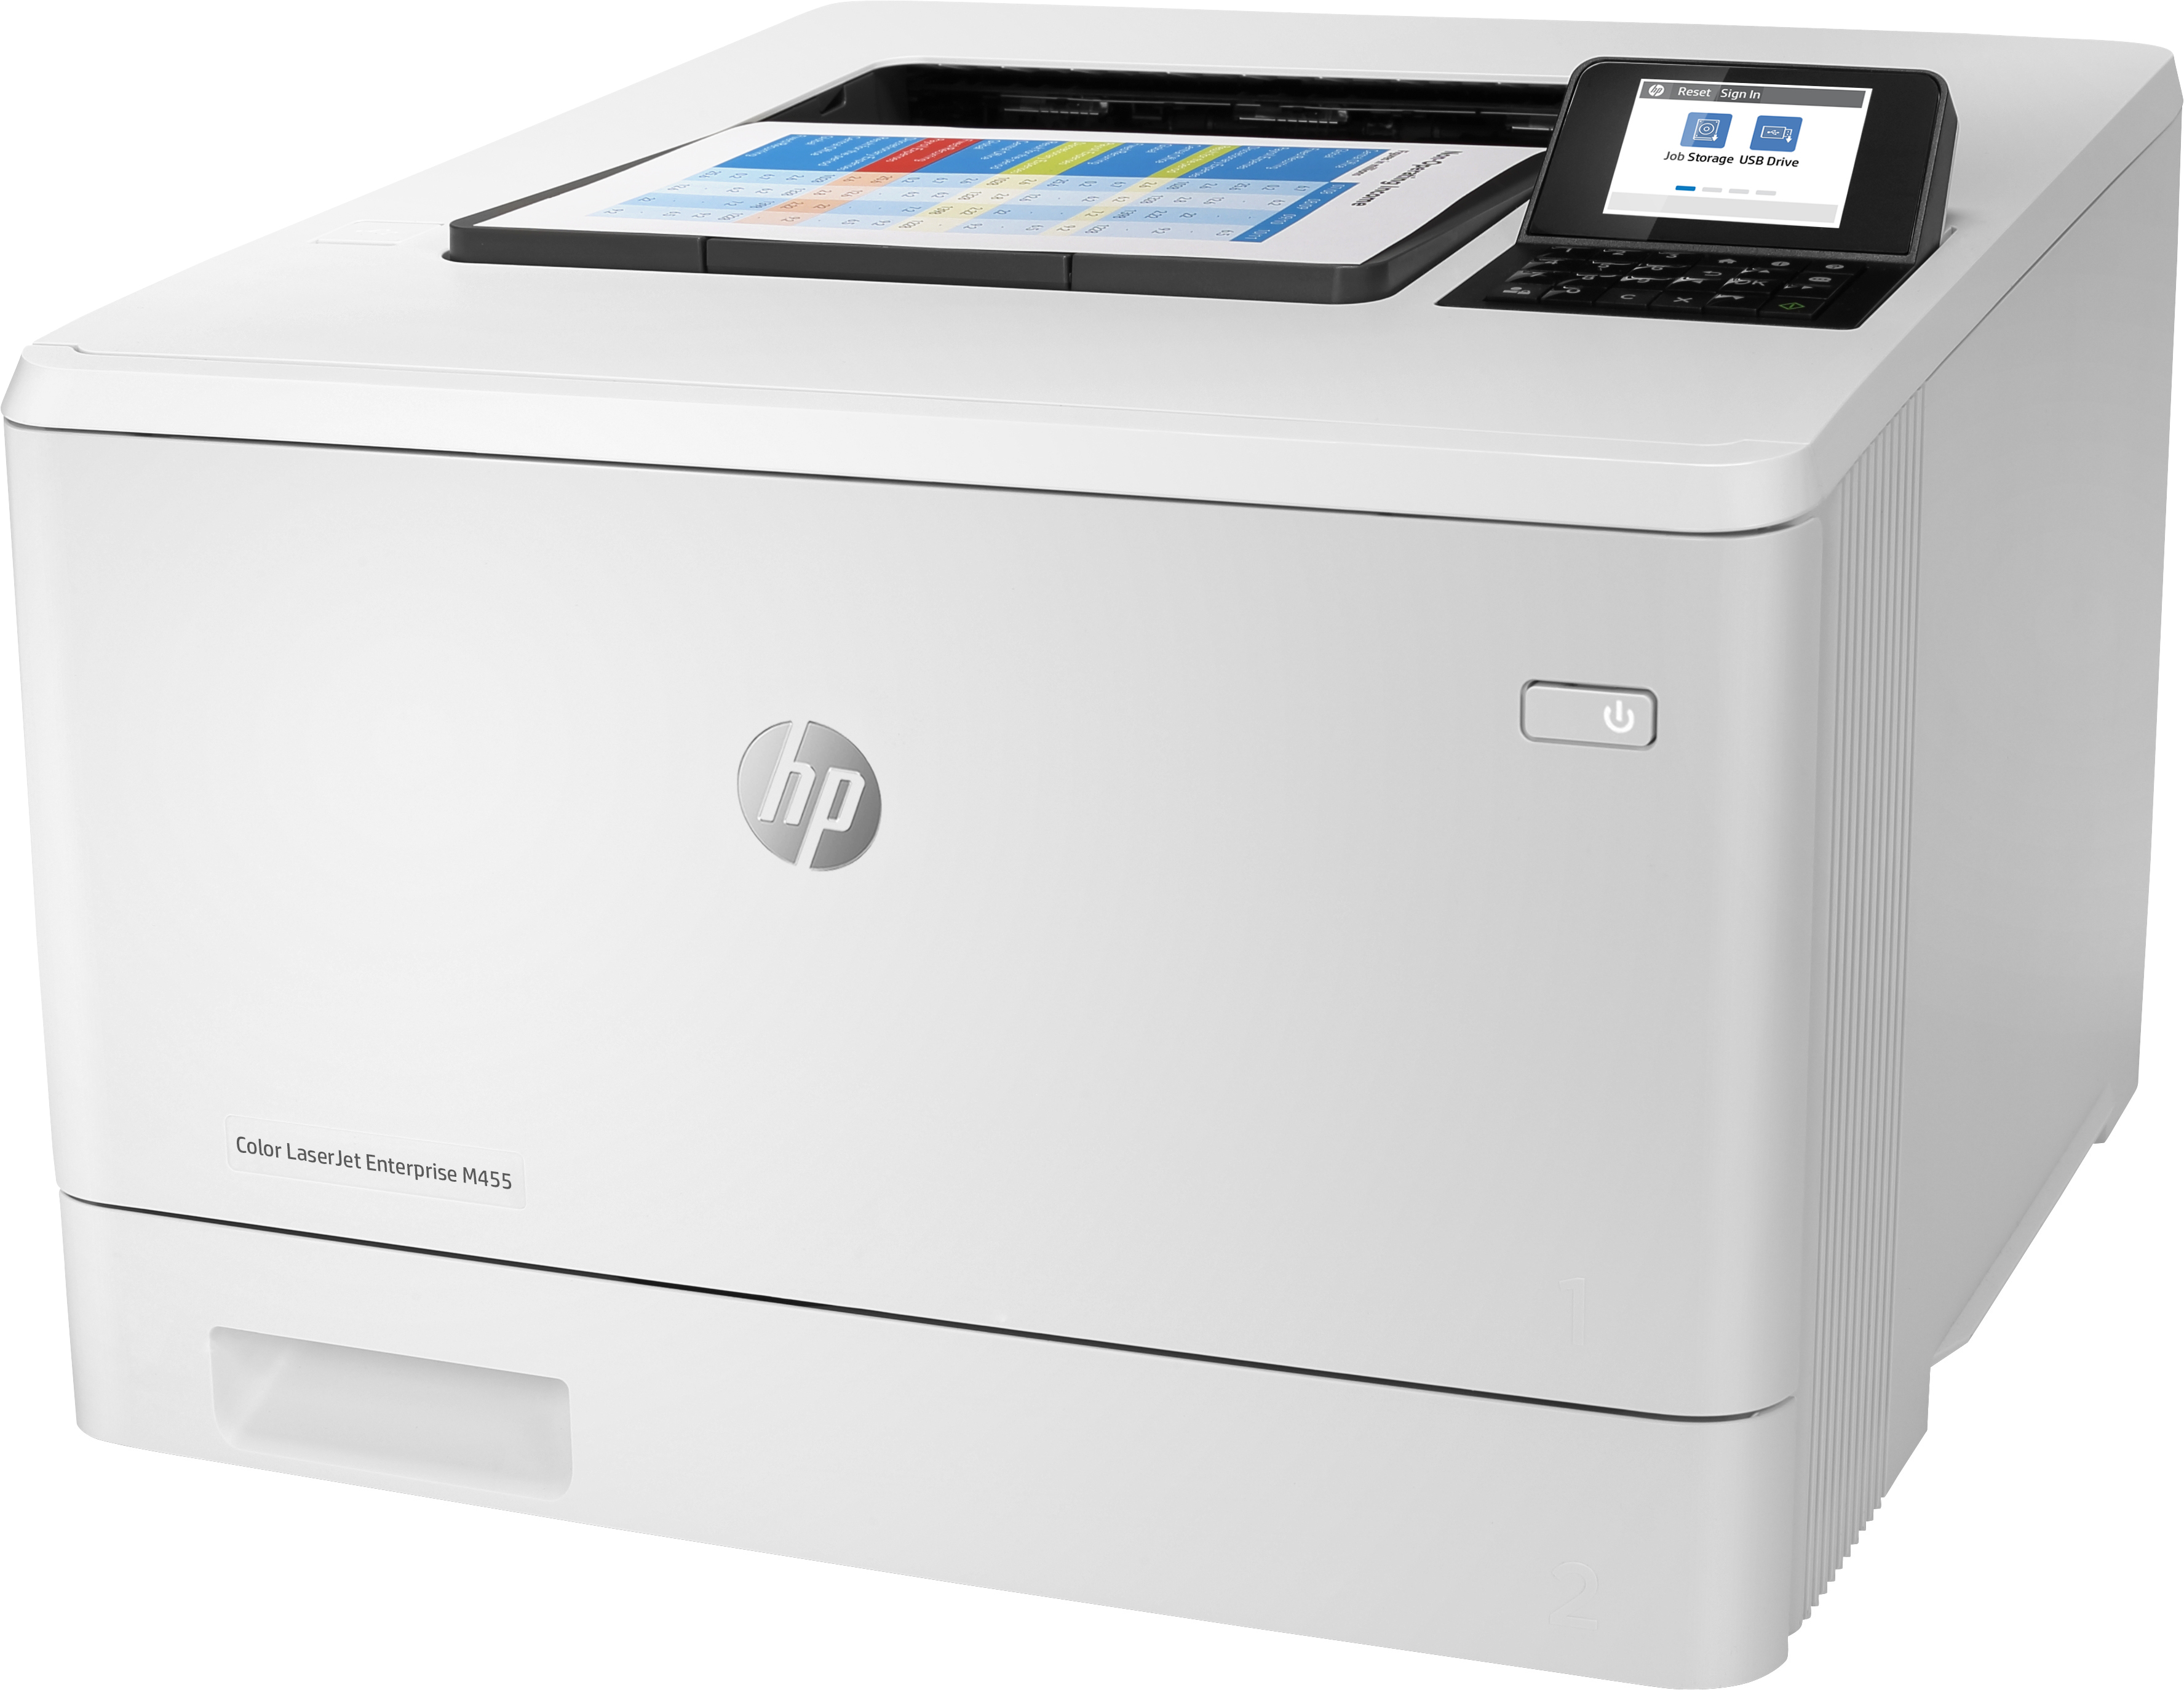 HP Color Laserjet Enterprise M455dn 3PZ95A#B19